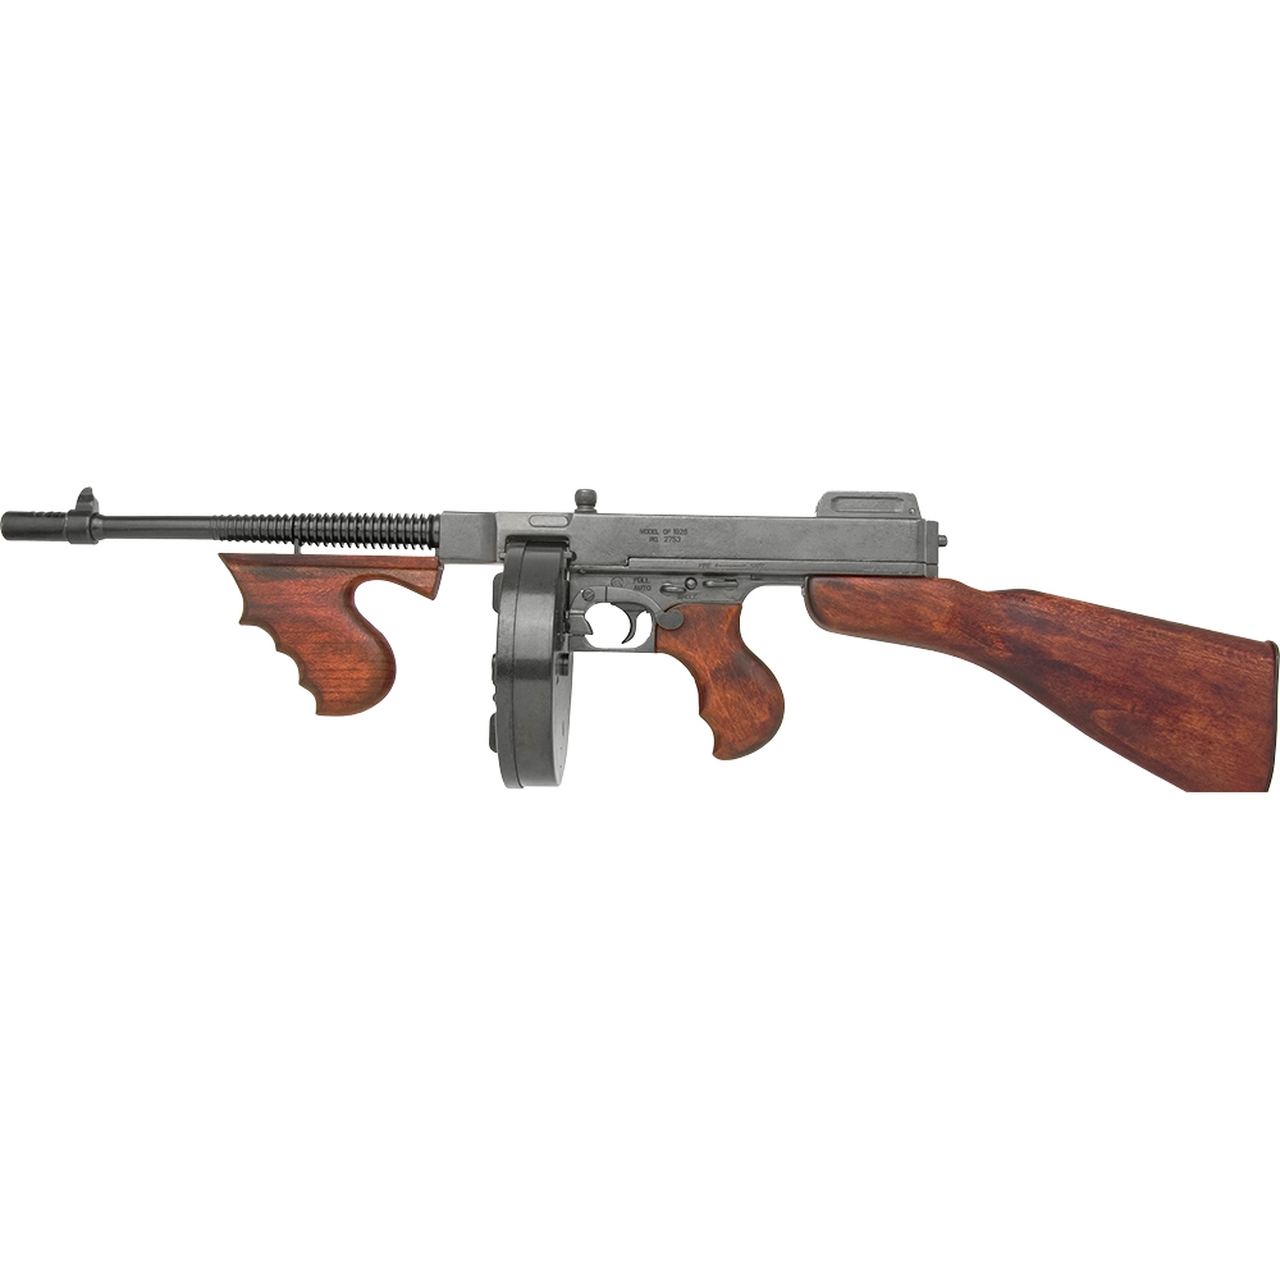 Replica Thompson M1928 Submachine Gun Non-Firing